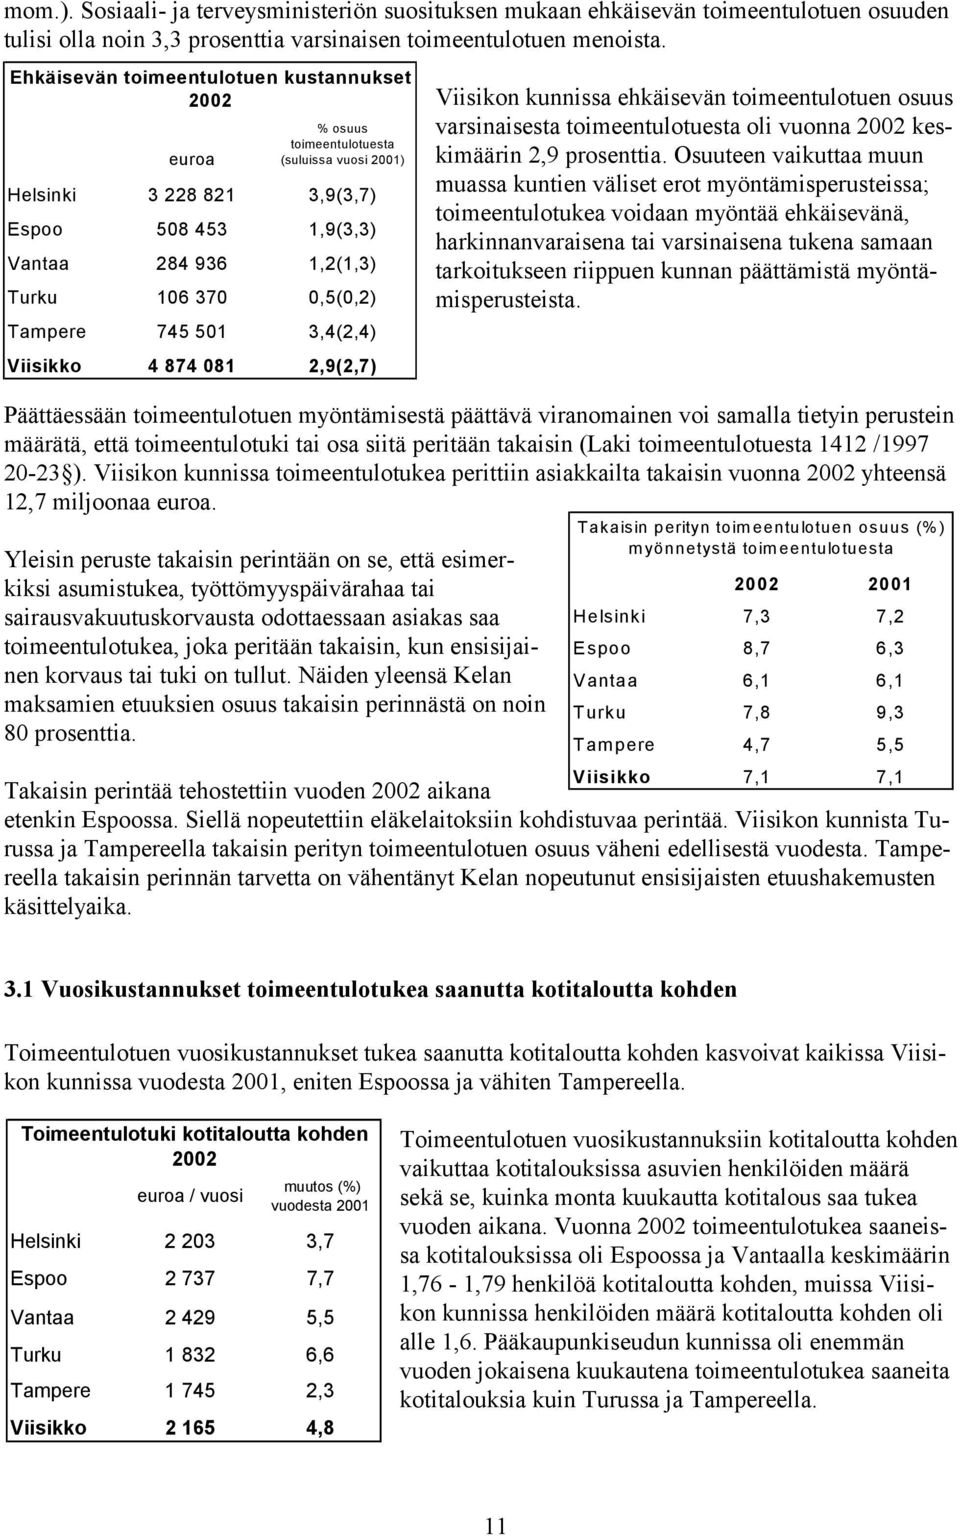 Tampere 745 501 3,4(2,4) Viisikko 4 874 081 2,9(2,7) Viisikon kunnissa ehkäisevän toimeentulotuen osuus varsinaisesta toimeentulotuesta oli vuonna 2002 keskimäärin 2,9 prosenttia.